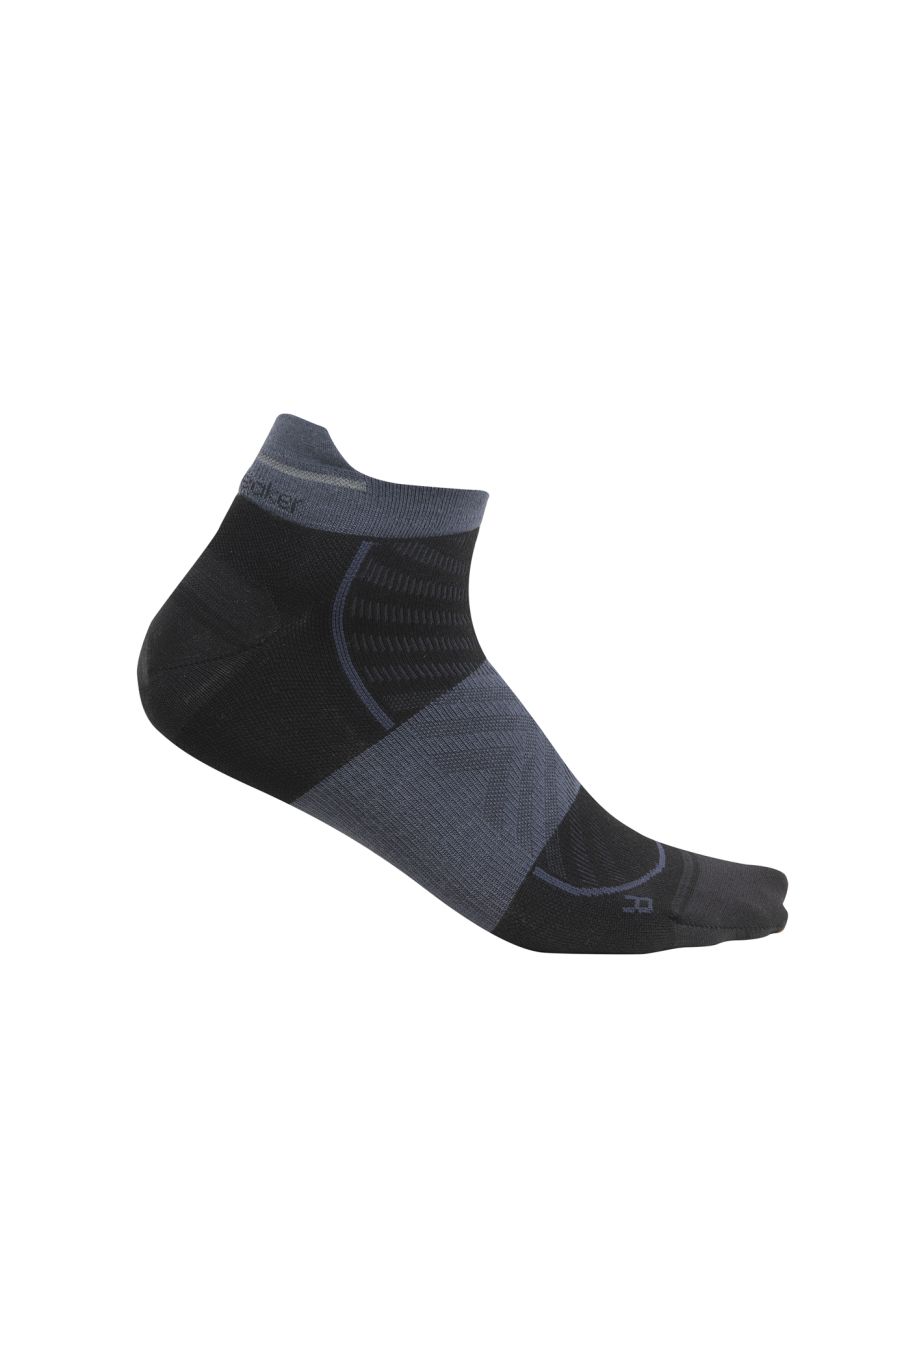 Pánské merino ponožky ICEBREAKER Mens Merino Run+ Ultralight Micro, Black/Graphite velikost: 39-41,5 (S)